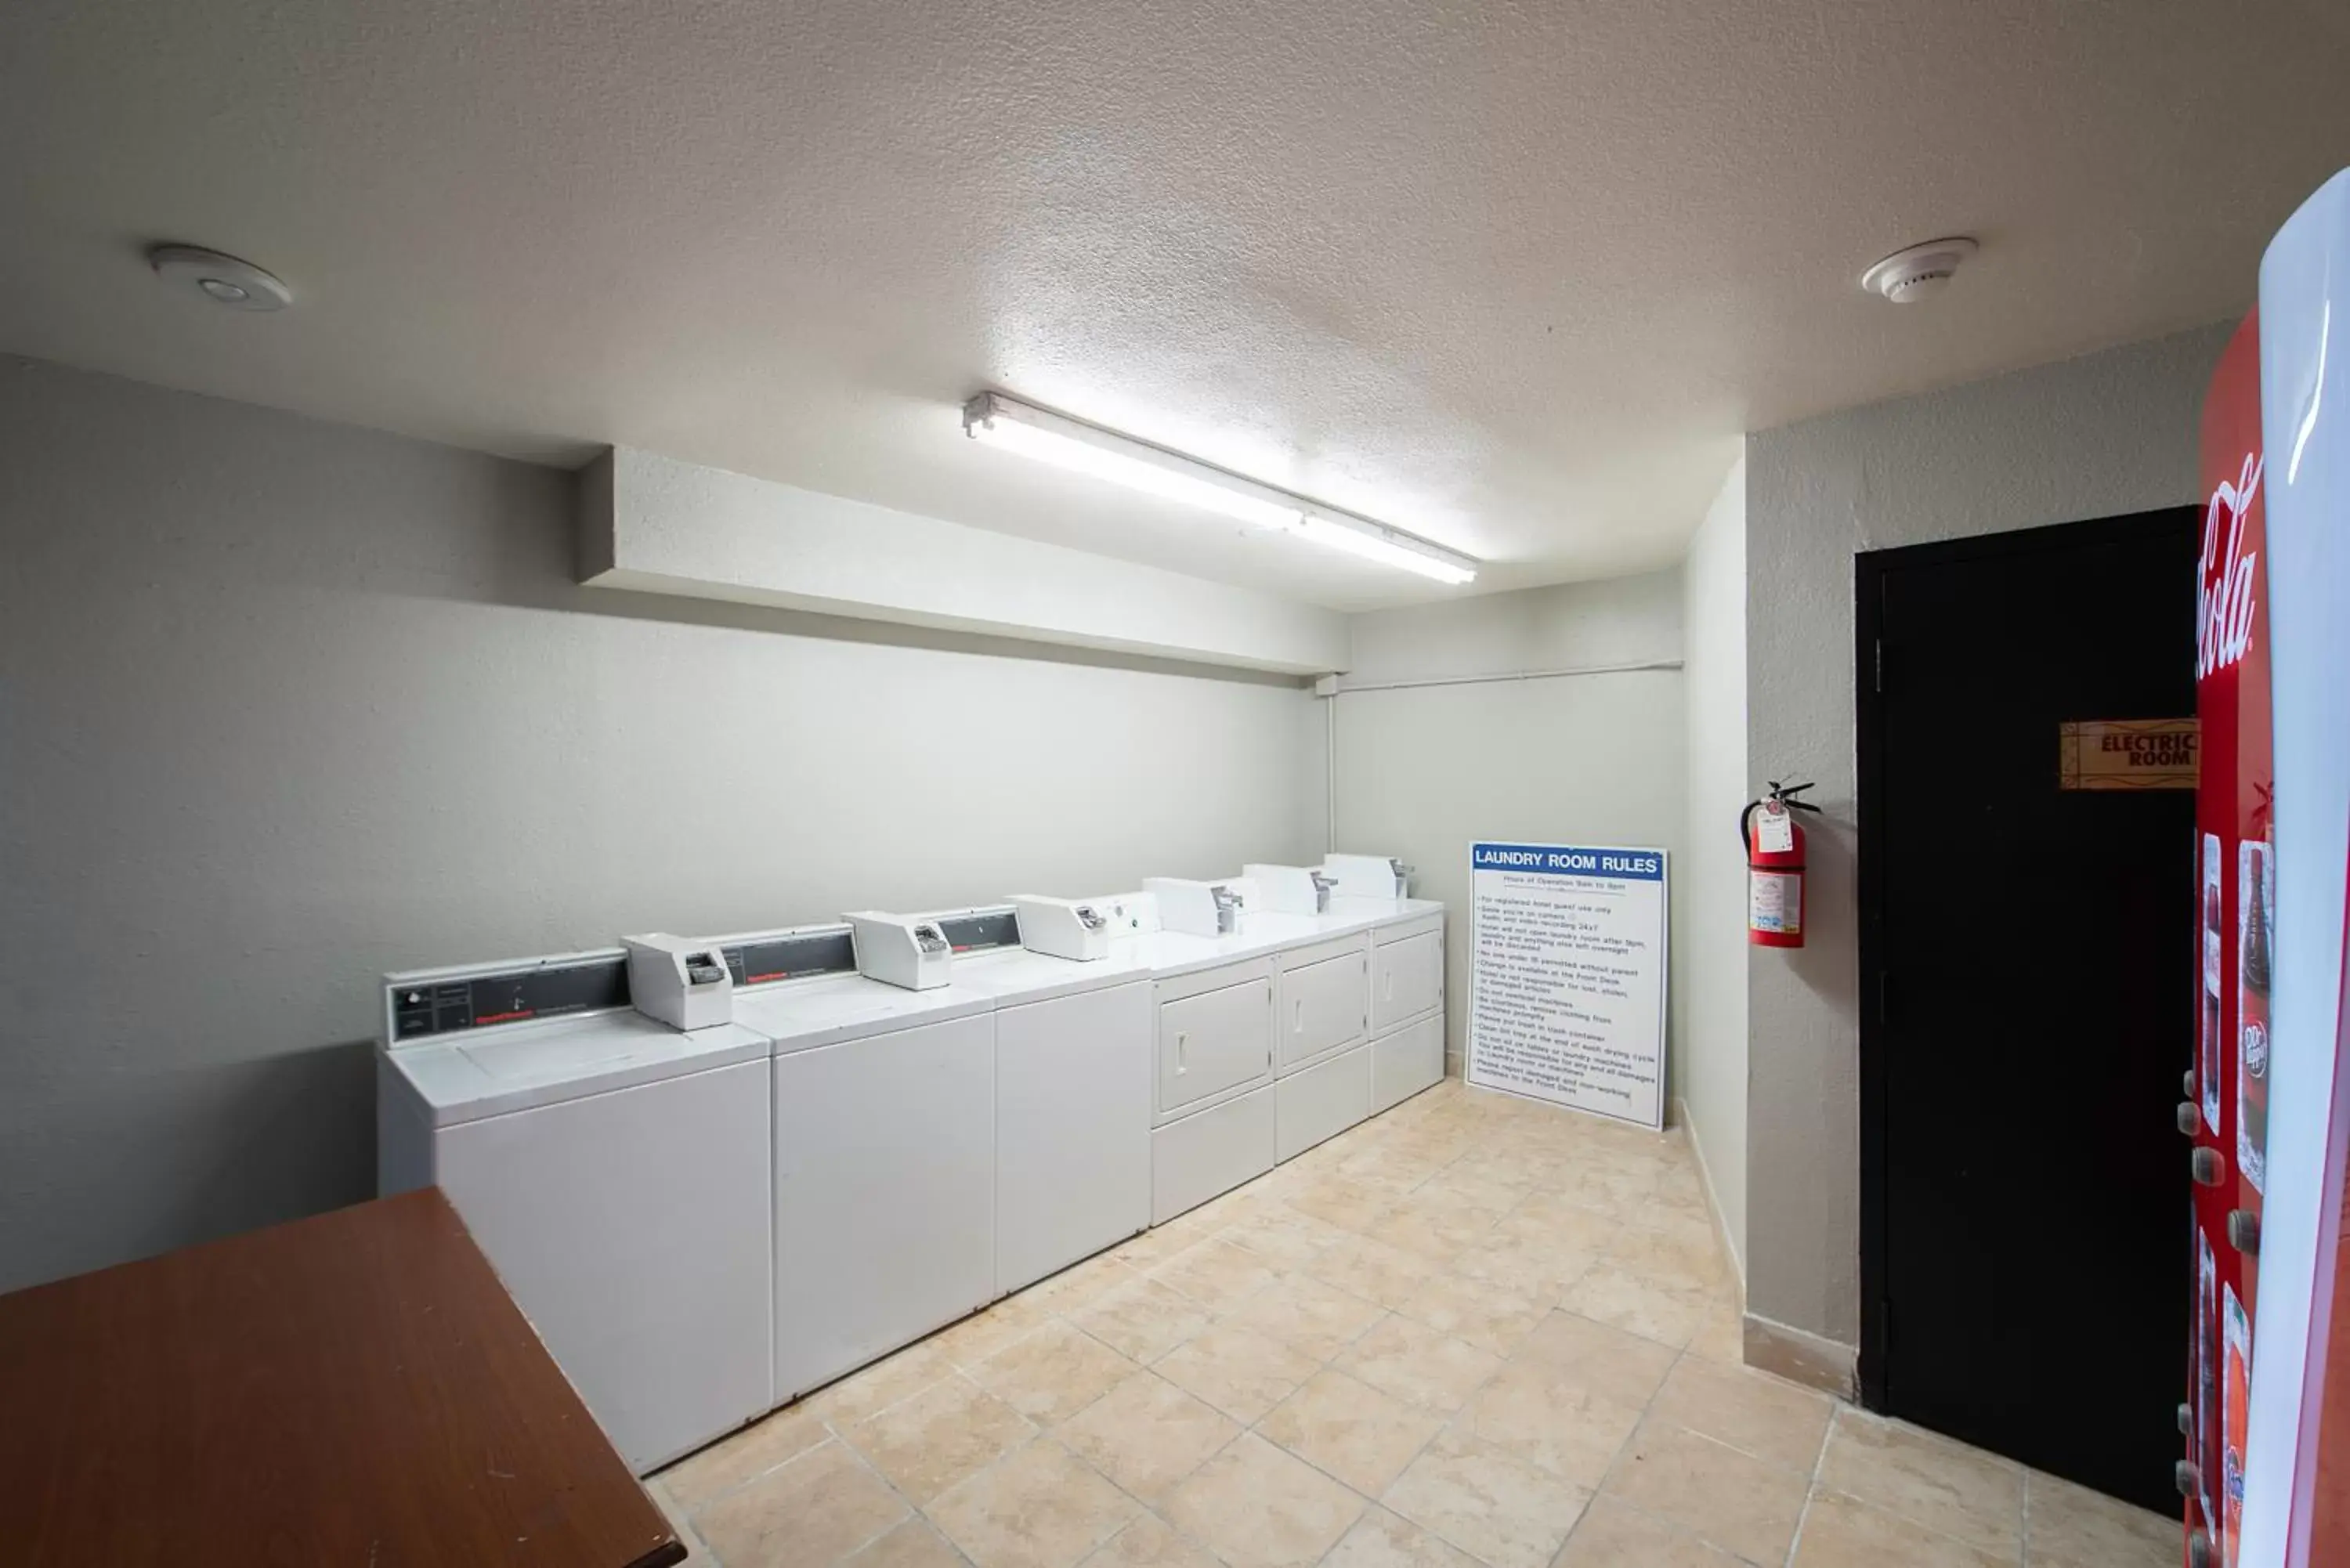 Area and facilities, Bathroom in Alexis Hotel & Banquets Dallas Park Central Galleria